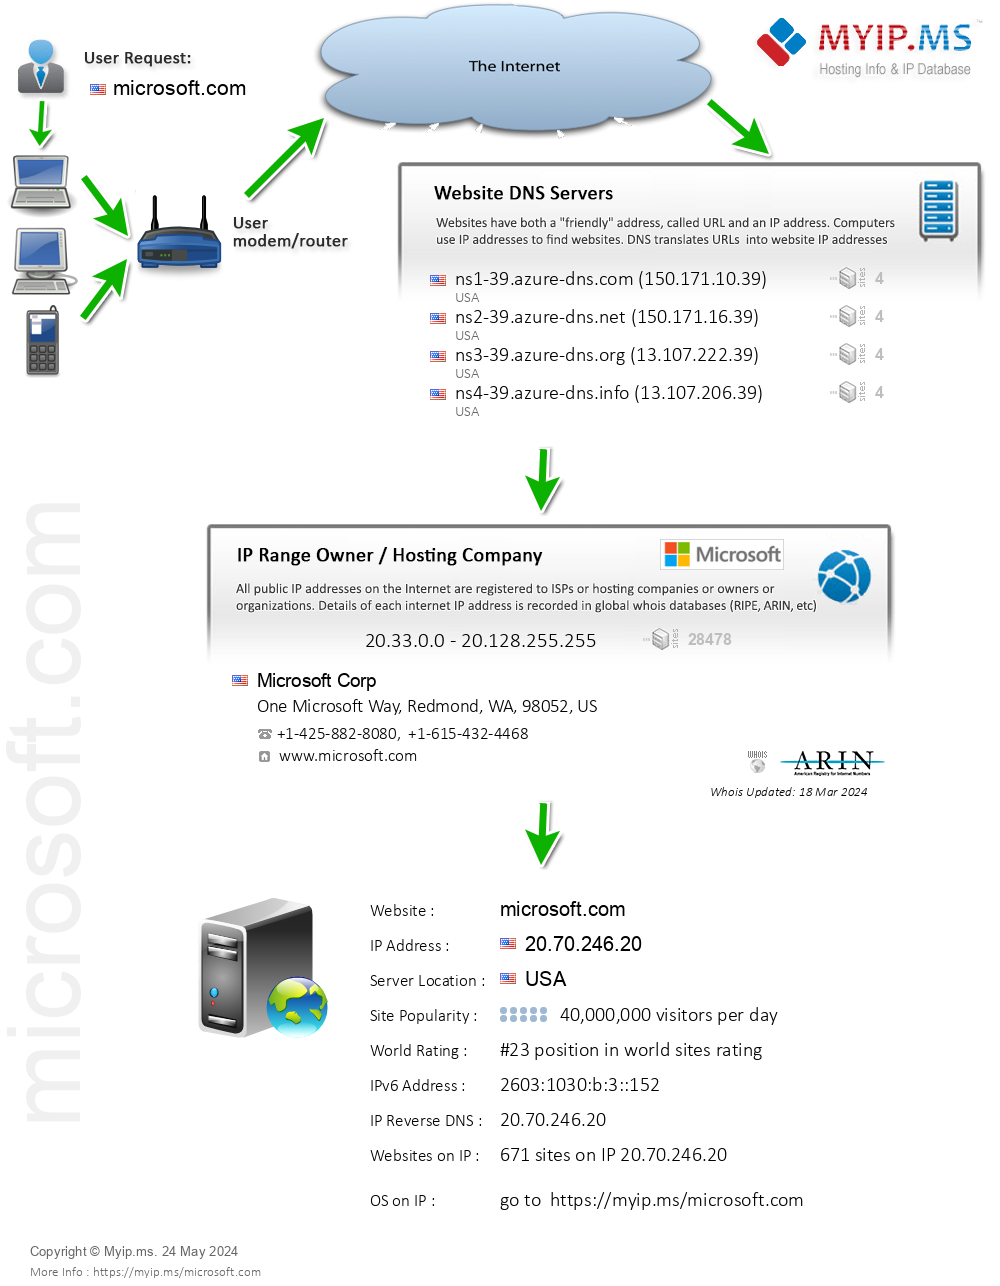 Microsoft.com - Website Hosting Visual IP Diagram